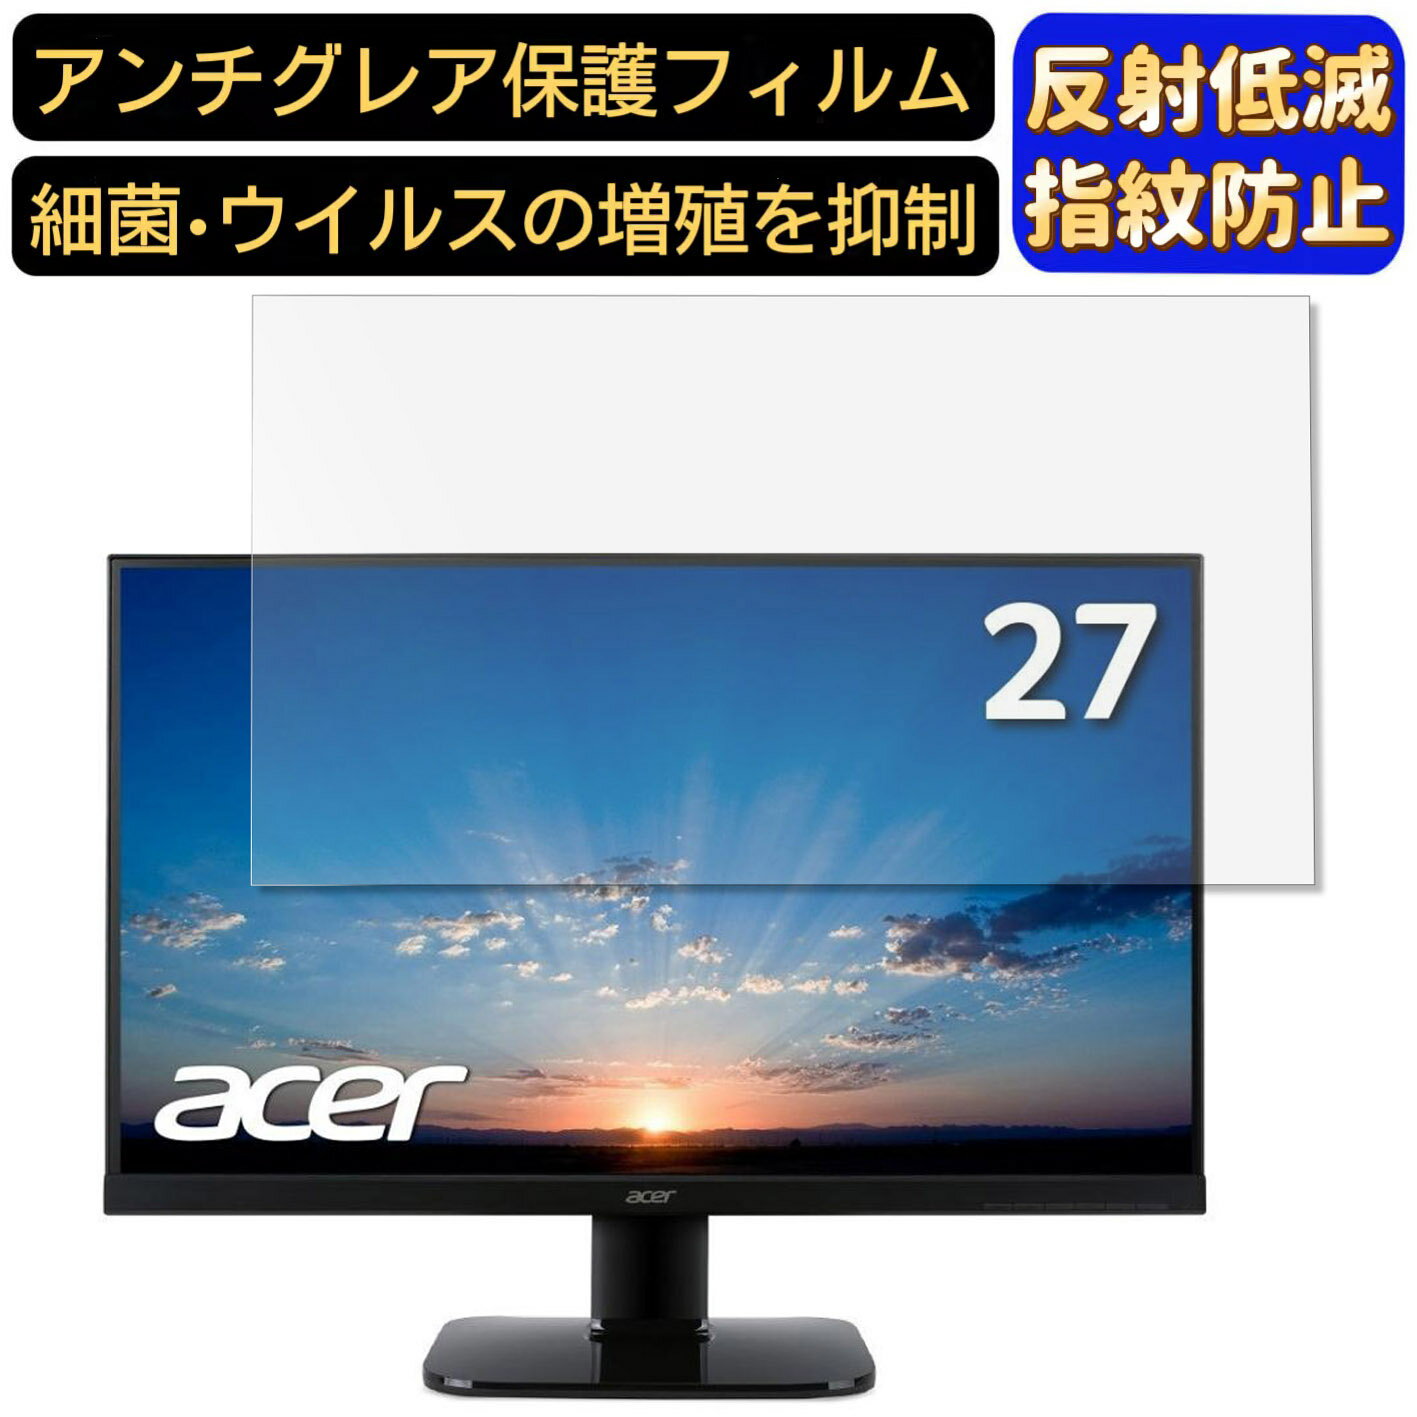 【ポイント2倍】Acer KA270HAbmidx_[27イ